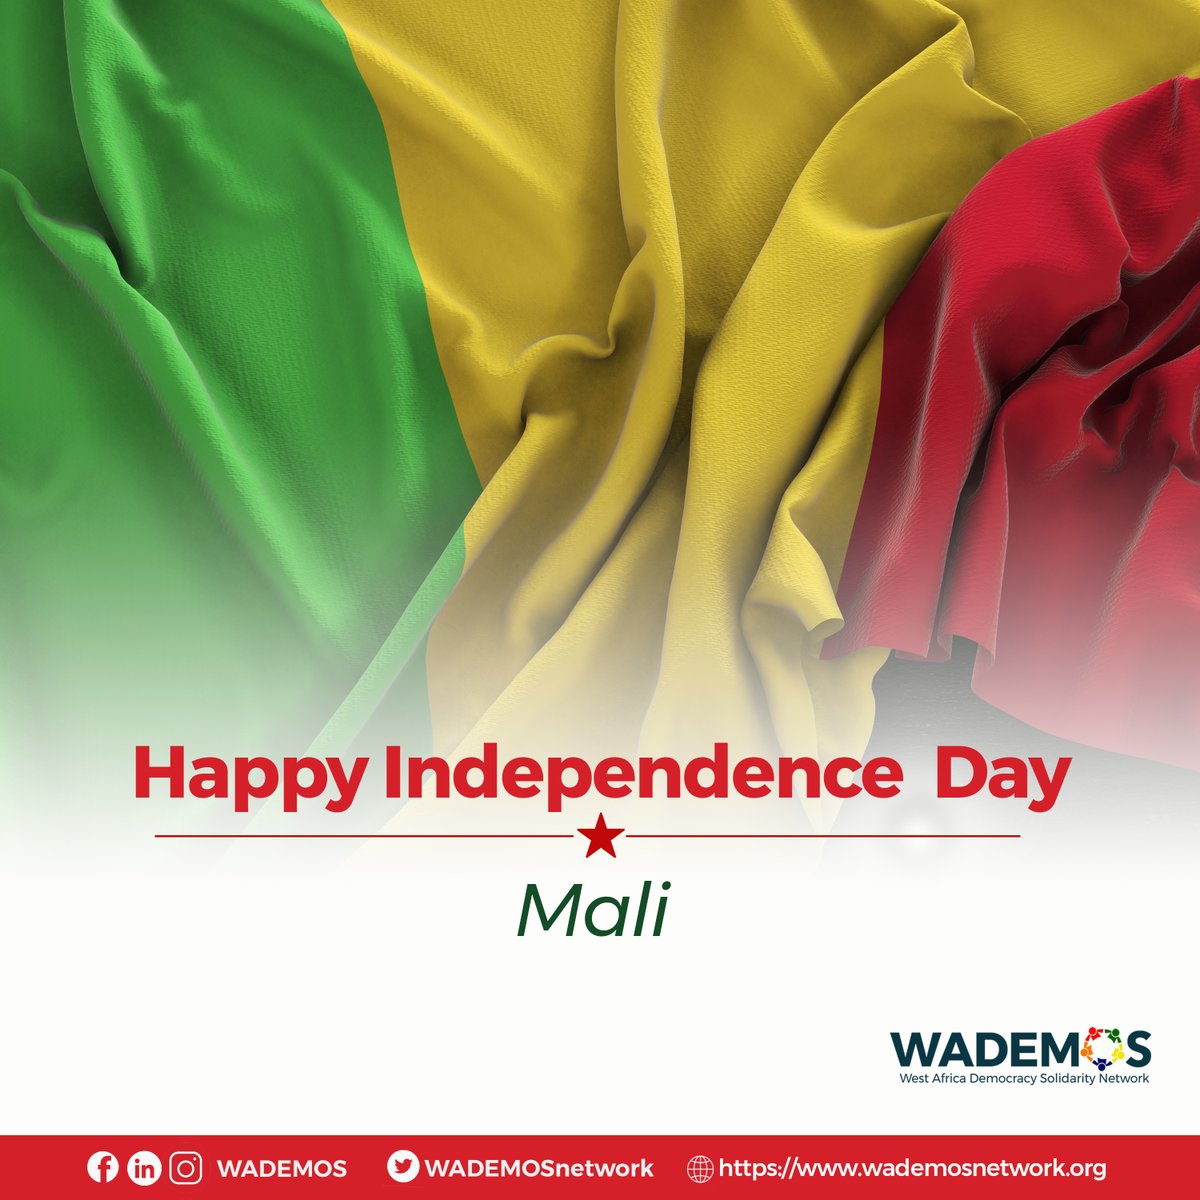 Nous adressons nos chaleureuses félicitations au peuple #Malien à l'occasion de votre fête de l'indépendance. Puissiez-vous avoir une fête mémorable. 

#SolidaritéPourlaDémocratie #WestAfrica #fêtedindépendancemali #malienfier #Mali